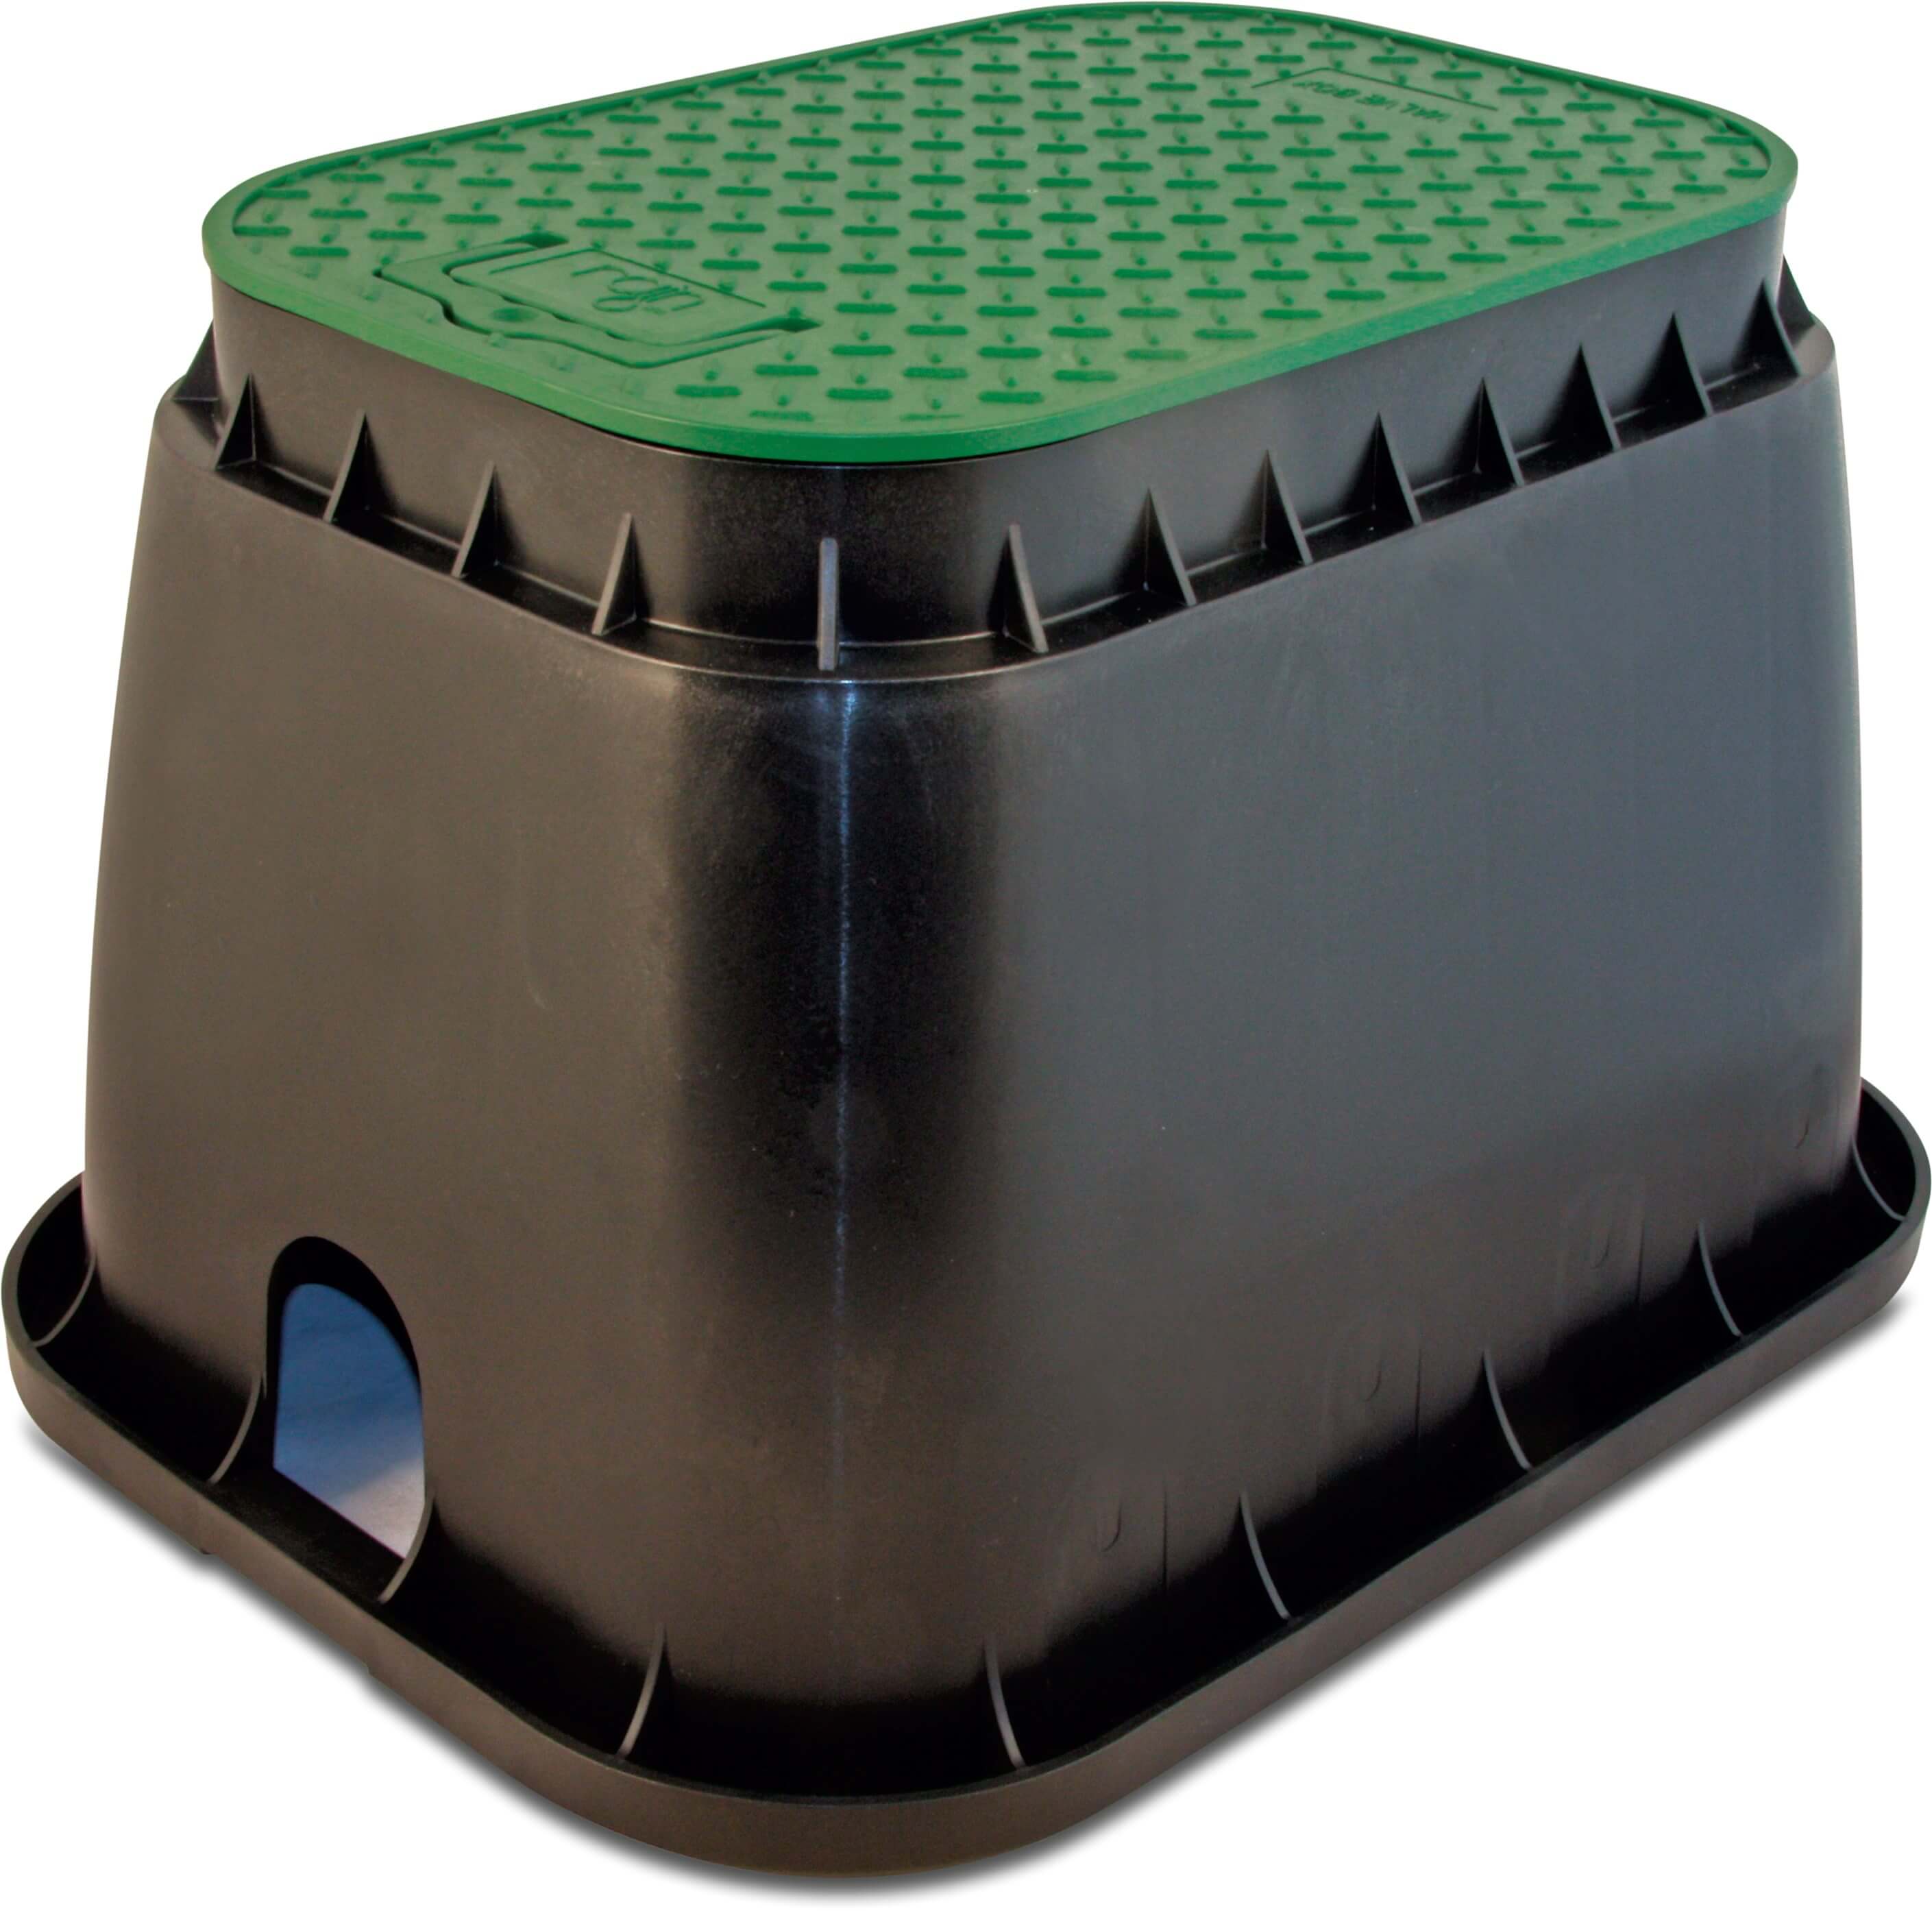 Rain Hydrantput PP zwart/groen type Standard